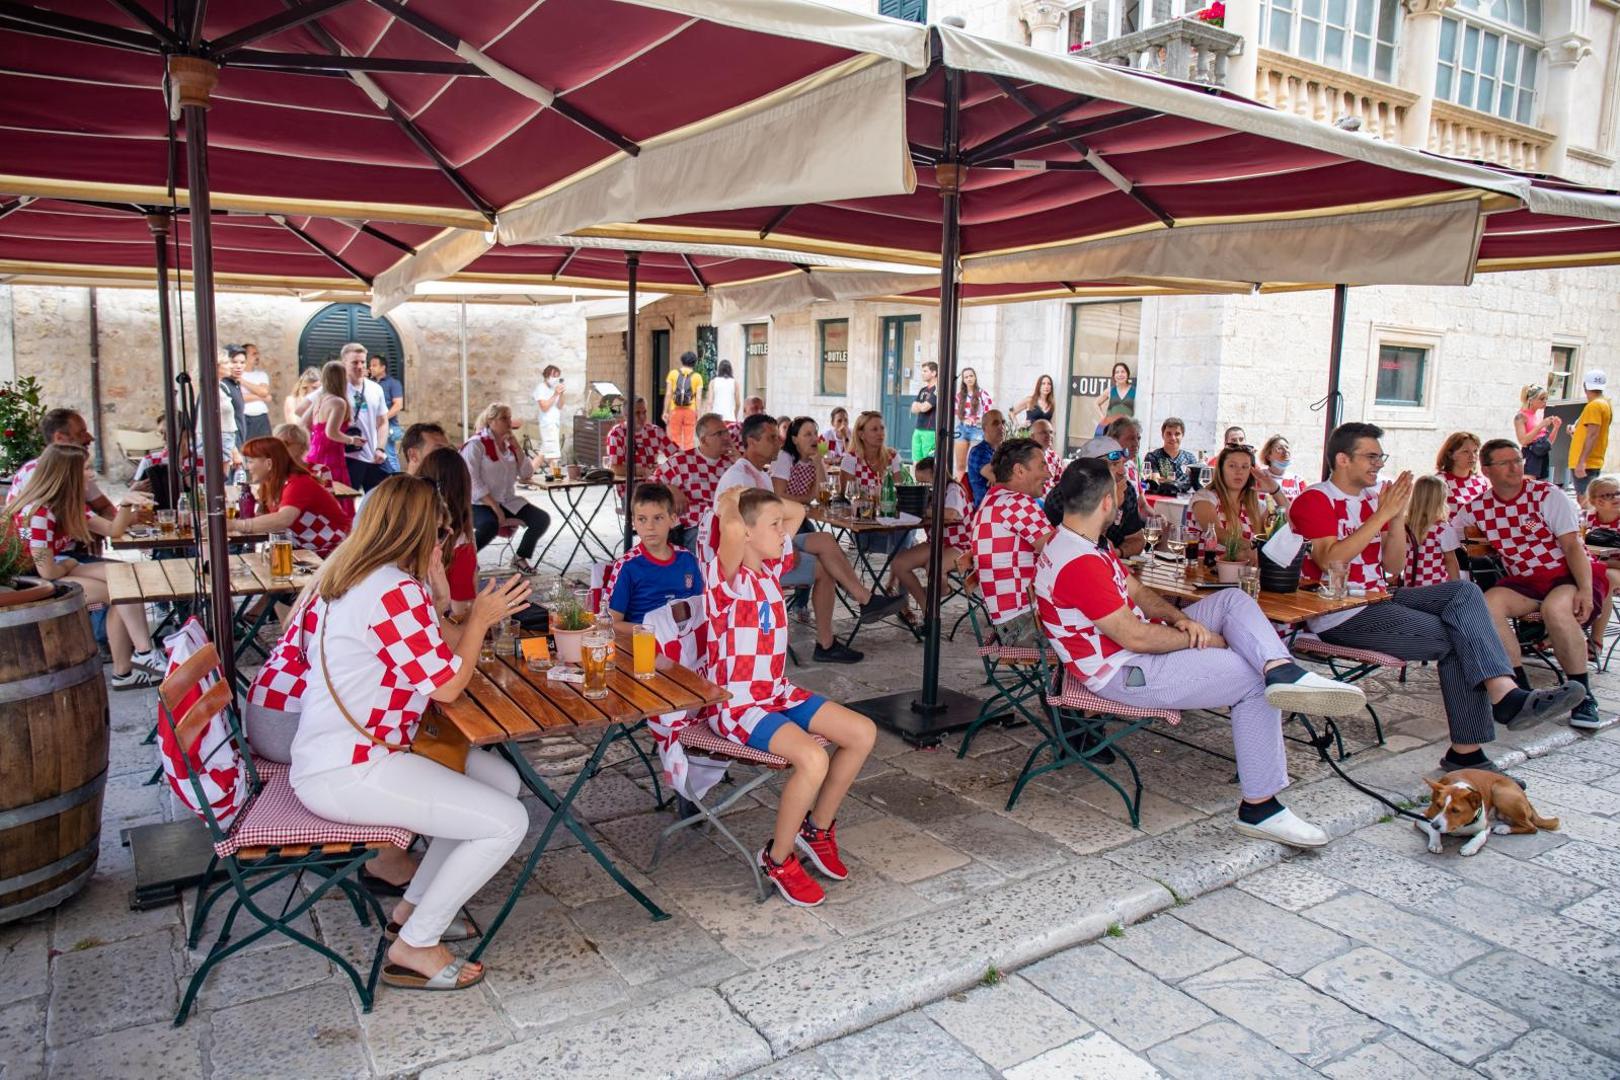 13.06.2021., Stara gradska jezgra, Dubrovnik - Dubrovacki navijaci okupljeni u kaficima.
Photo: Grgo Jelavic/PIXSELL